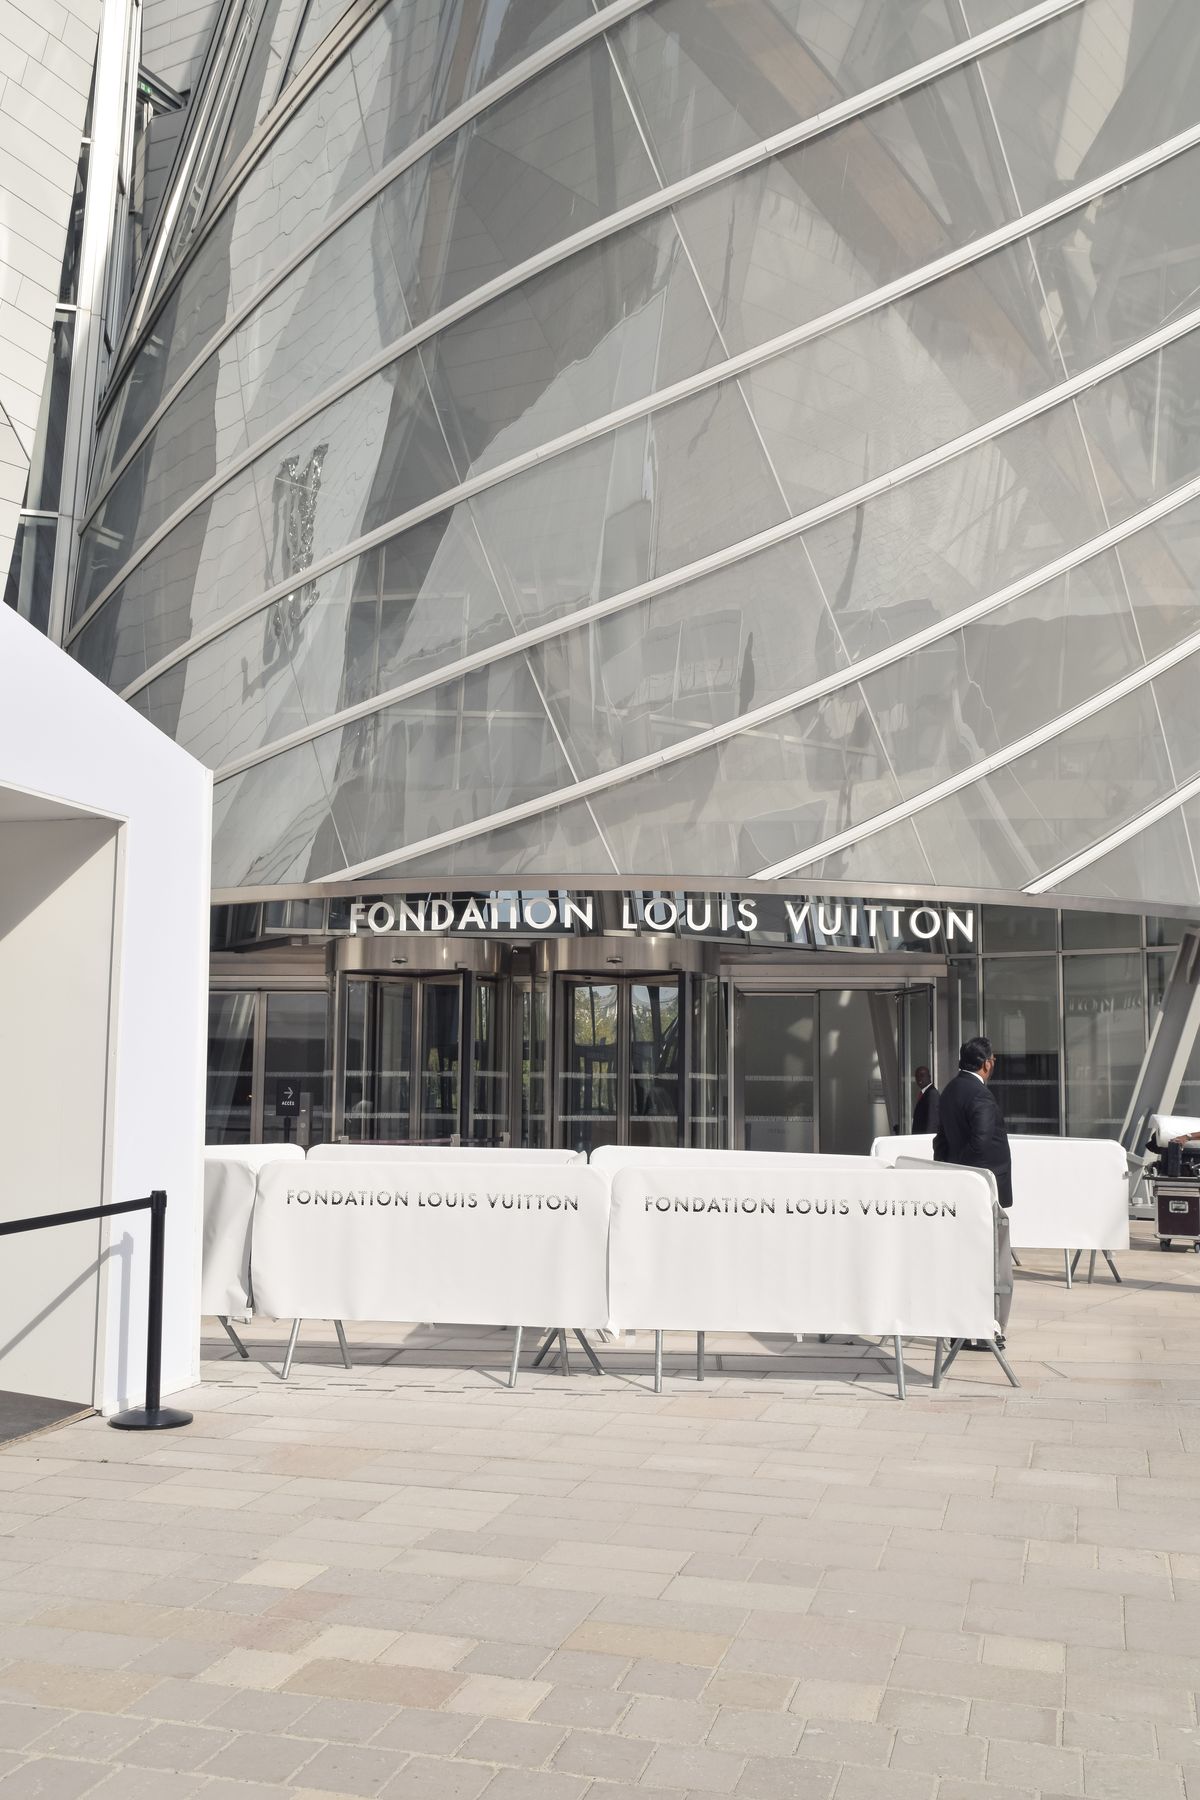 Fondation Louis Vuitton Entrance, Paris, France